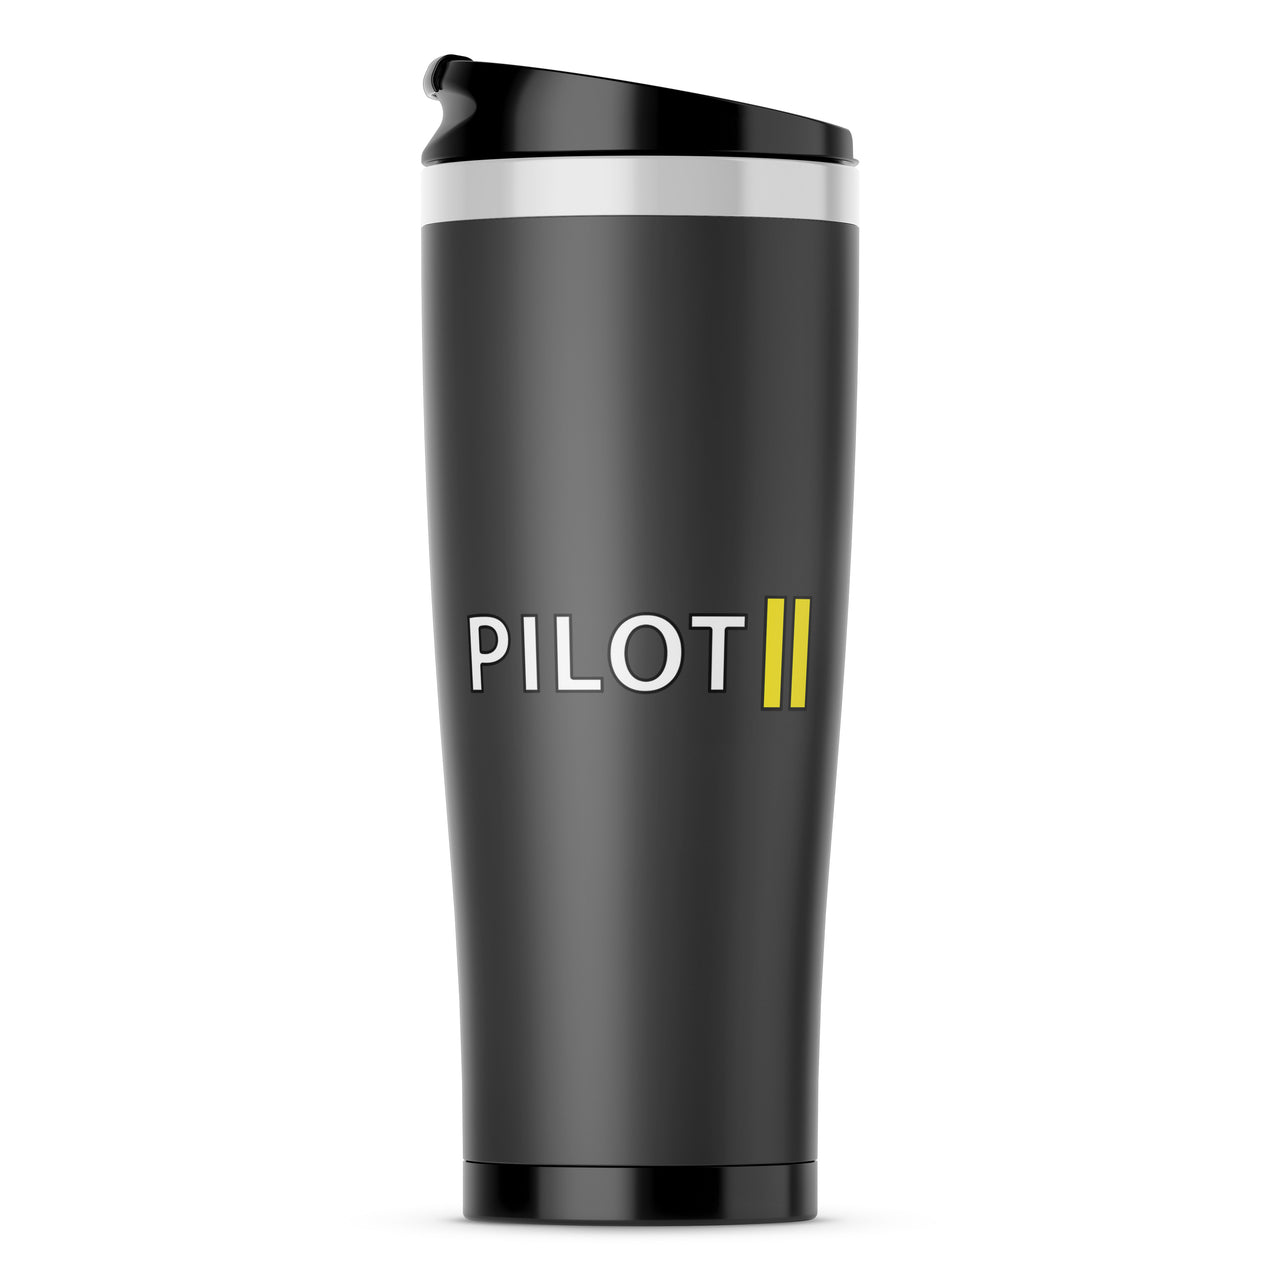 Pilot & Stripes (2 Lines) Designed Travel Mugs